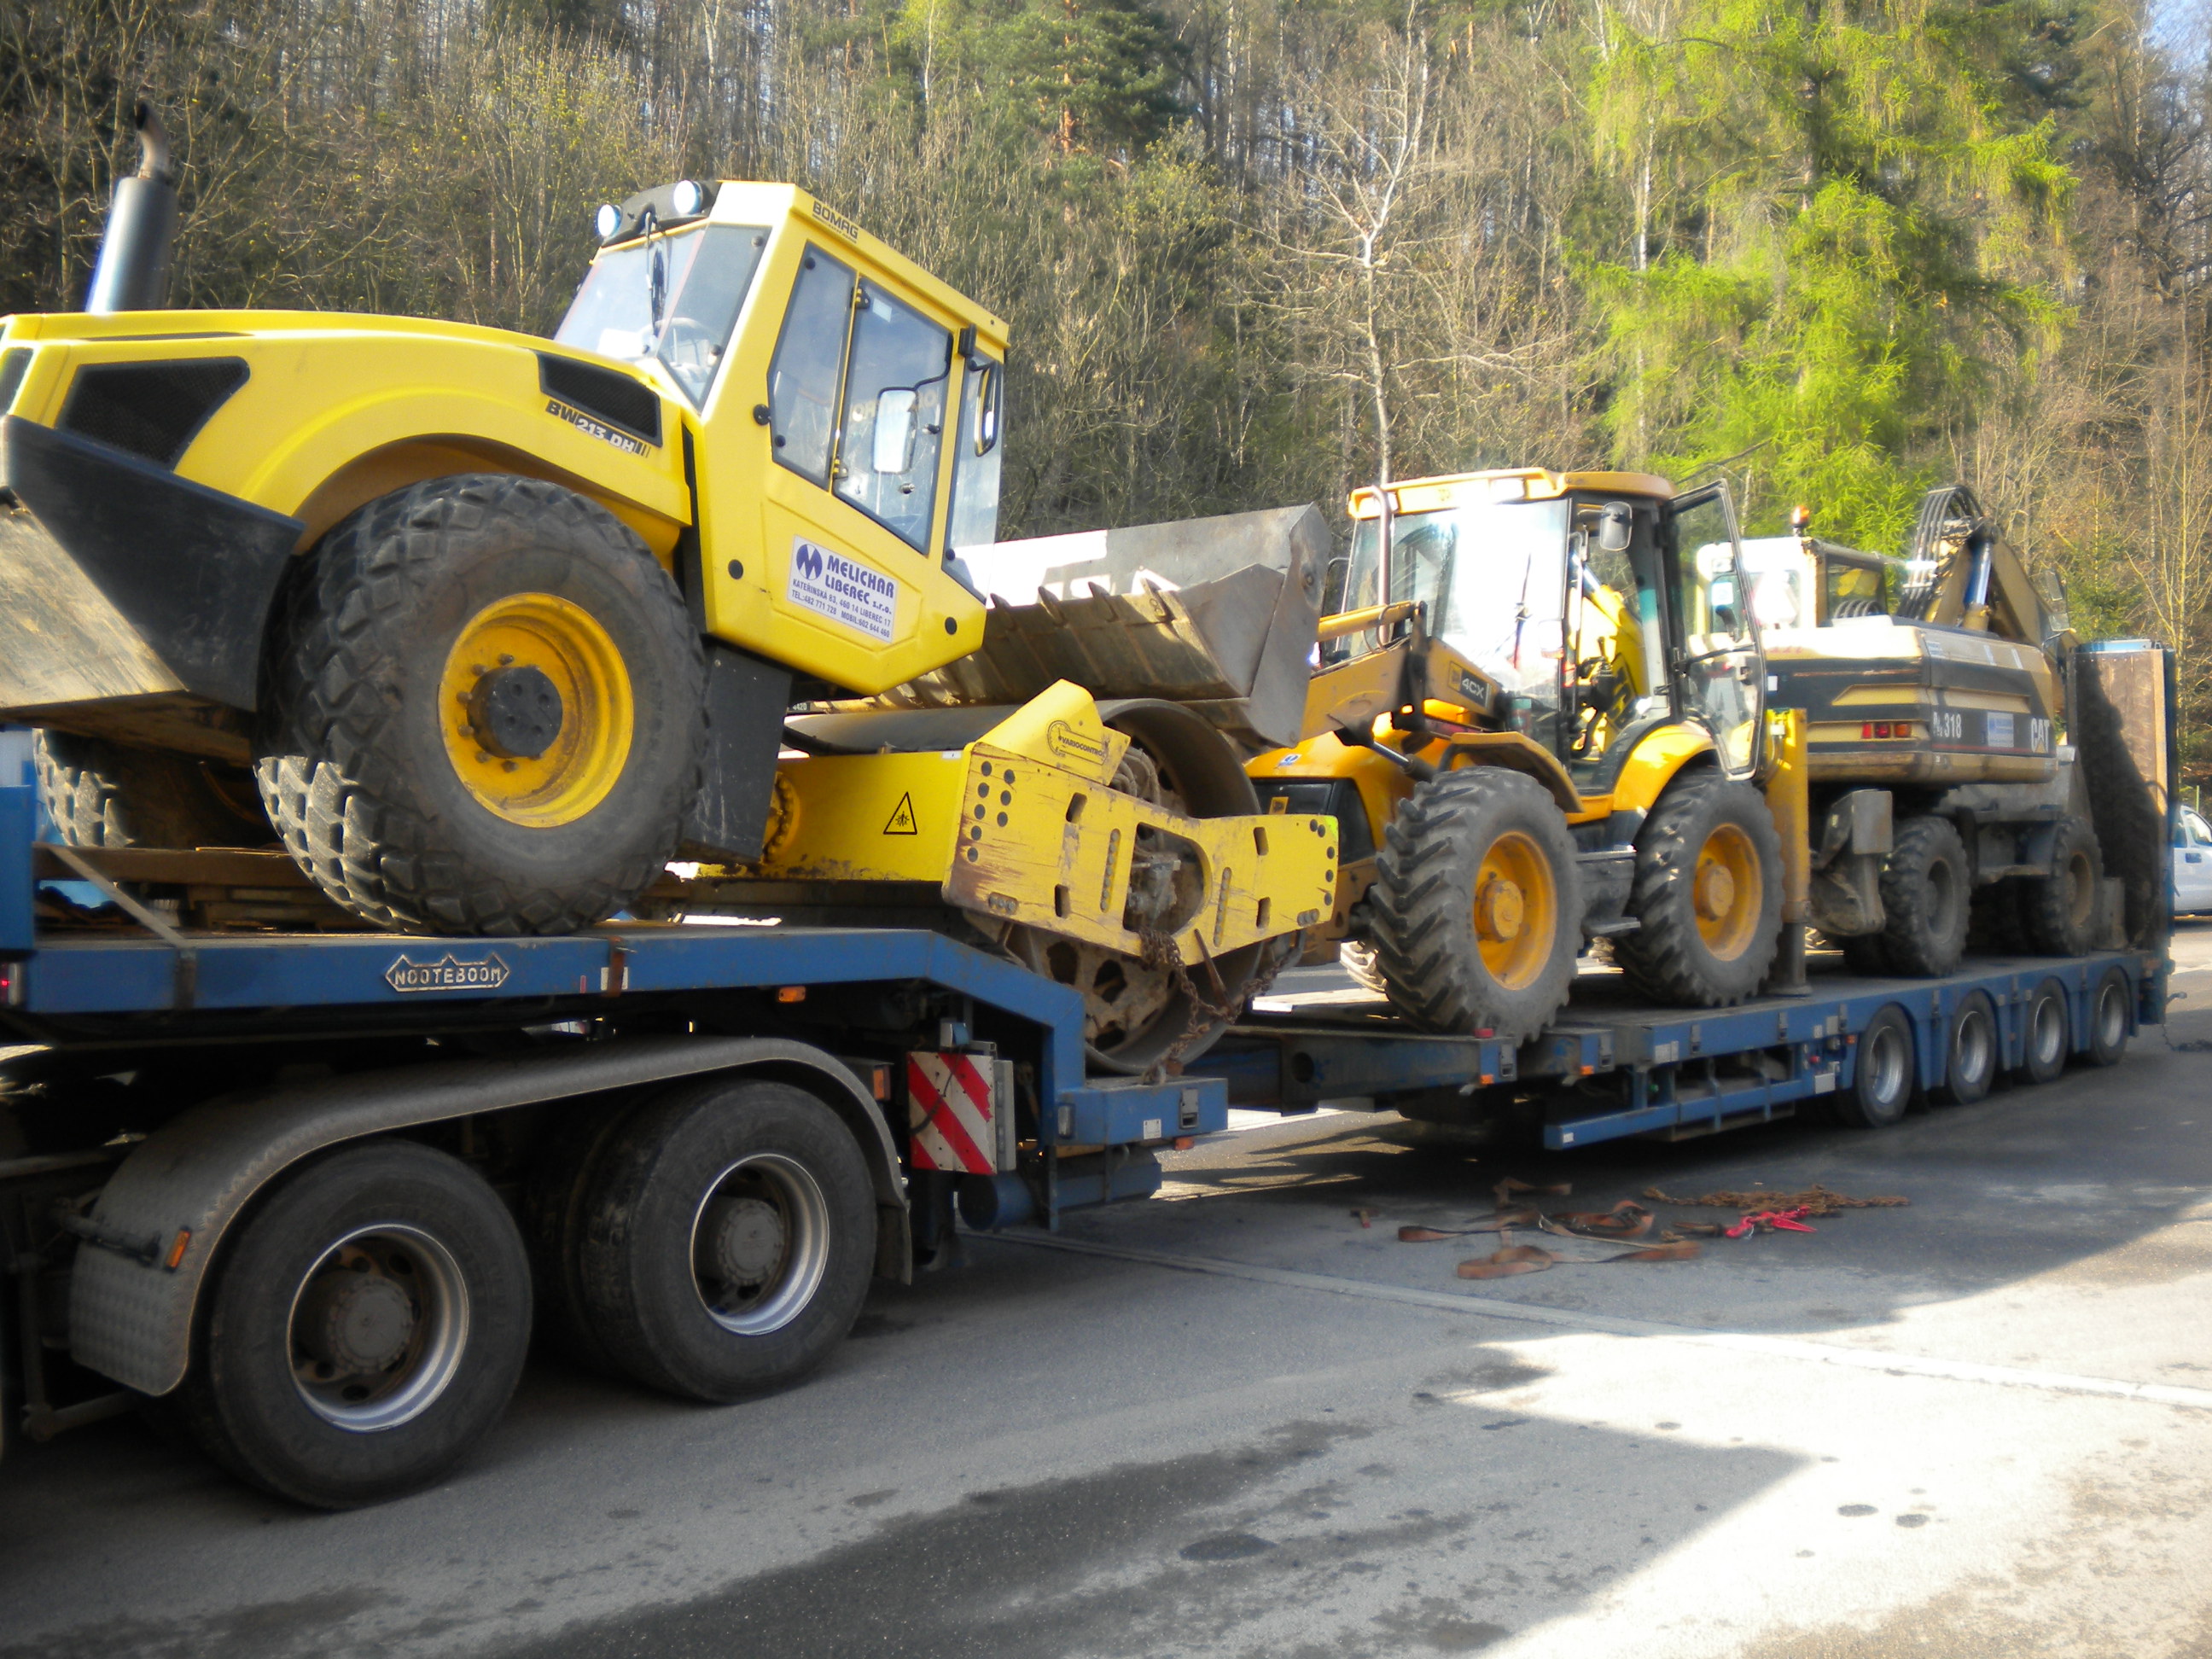 Zemní práce demolice budov těžební práce Liberec kanalizace.